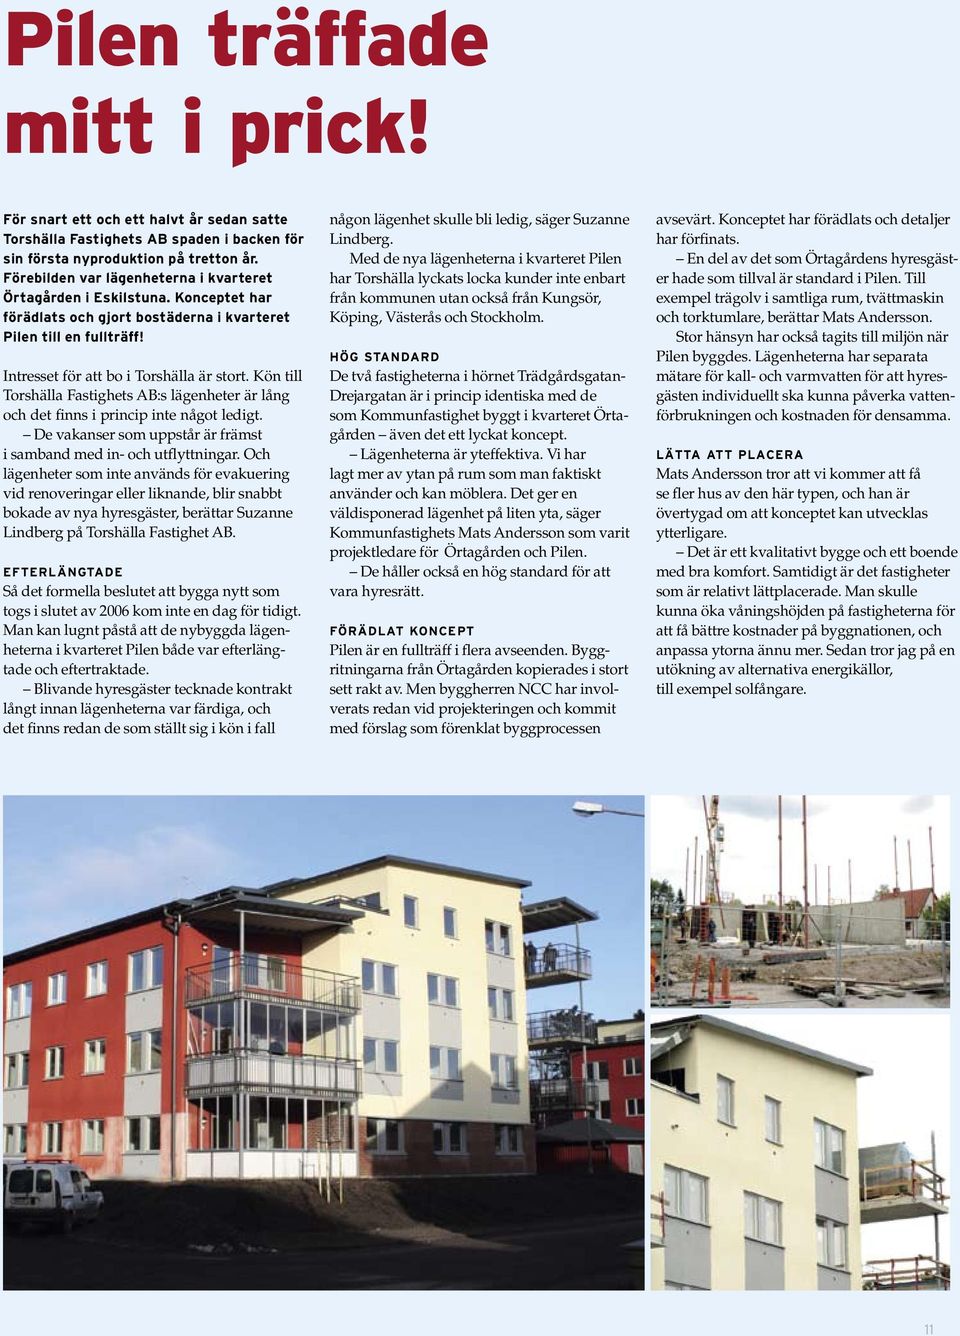 Kön till Torshälla Fastighets AB:s lägenheter är lång och det finns i princip inte något ledigt. De vakanser som uppstår är främst i samband med in- och utflyttningar.